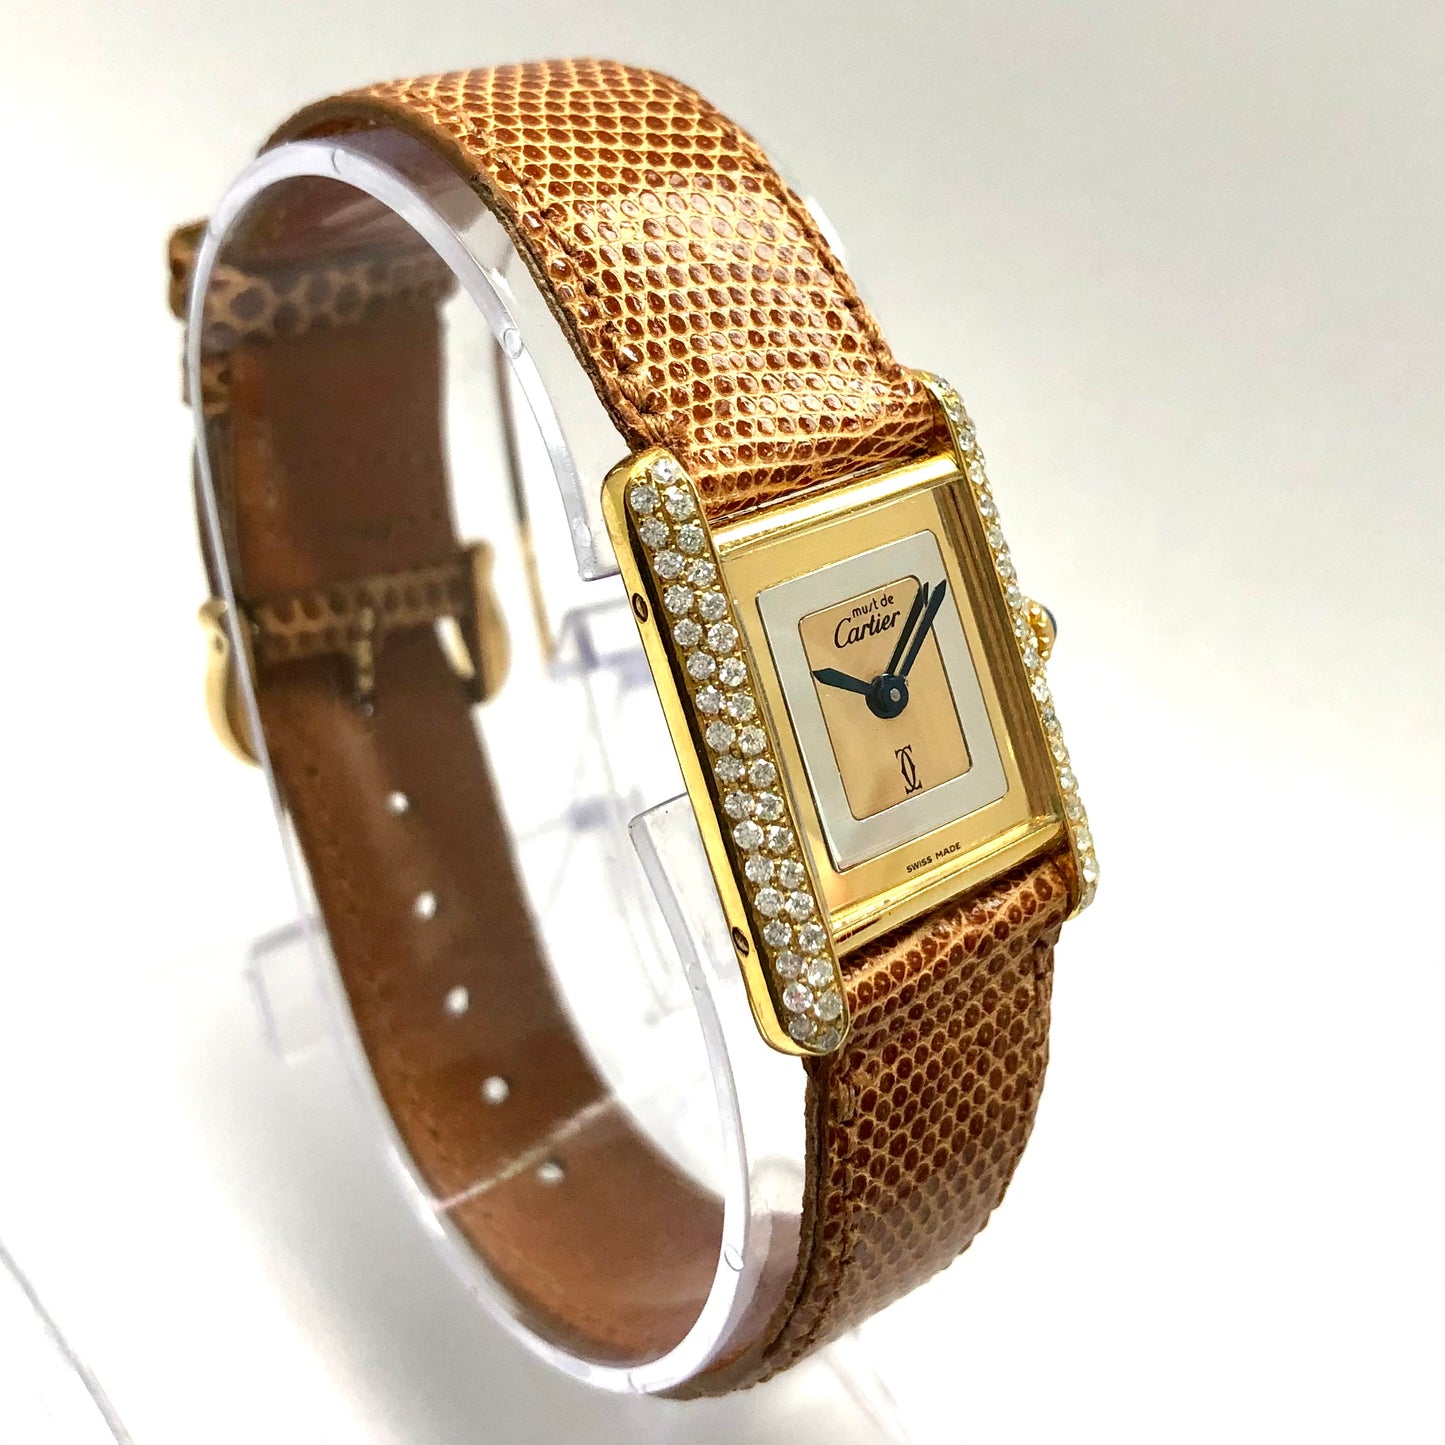 Must de CARTIER TANK Quartz 21mm Goldplated Diamond Watch